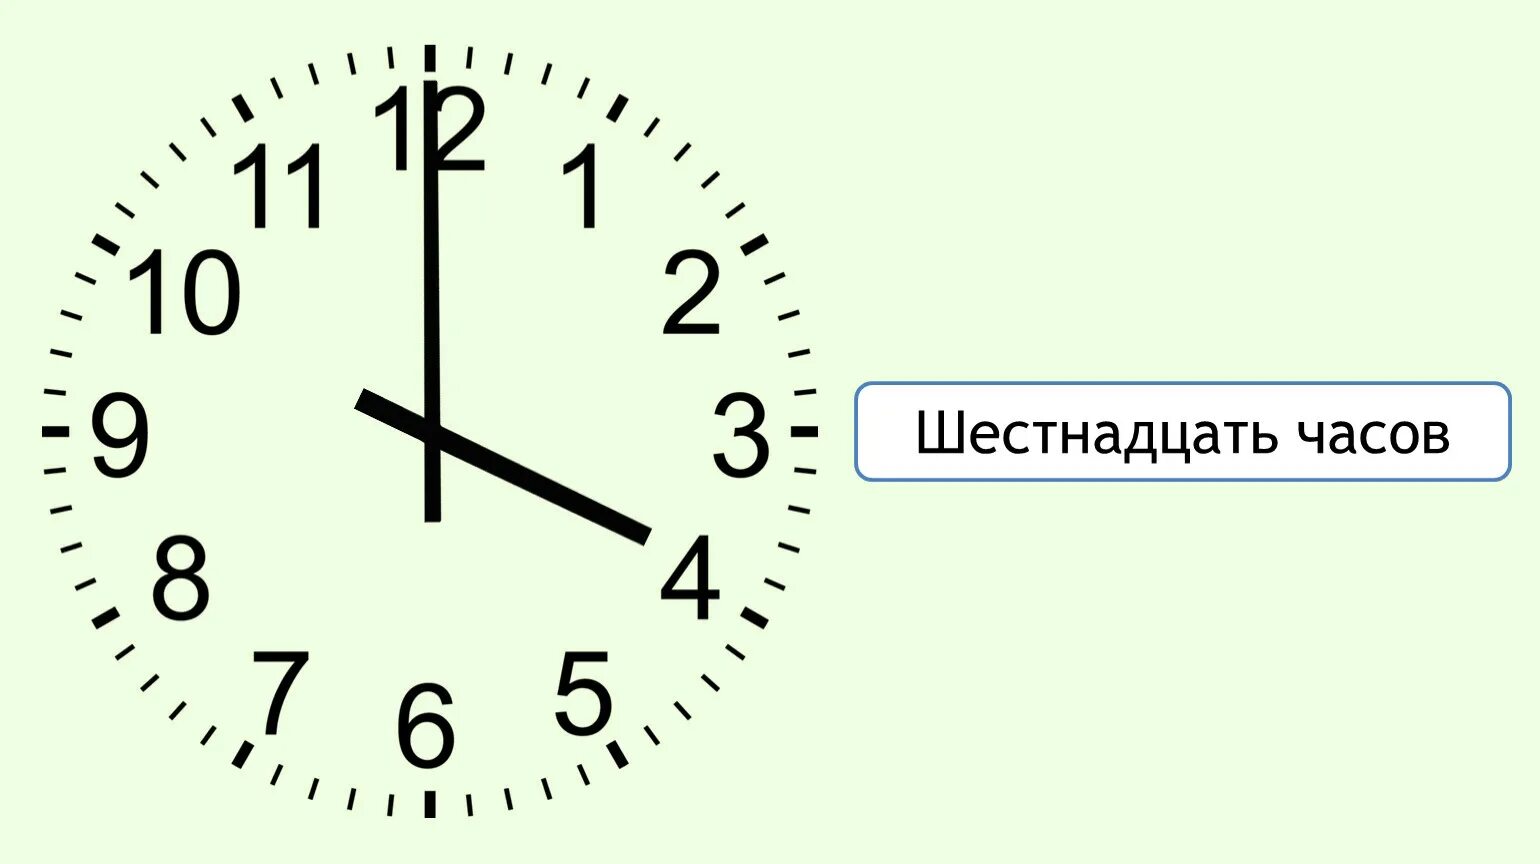 Часы 16:00. Циферблат на 16 часов. Часы показывают 4 часа. 16 Часов на часах. Покажи шестнадцать